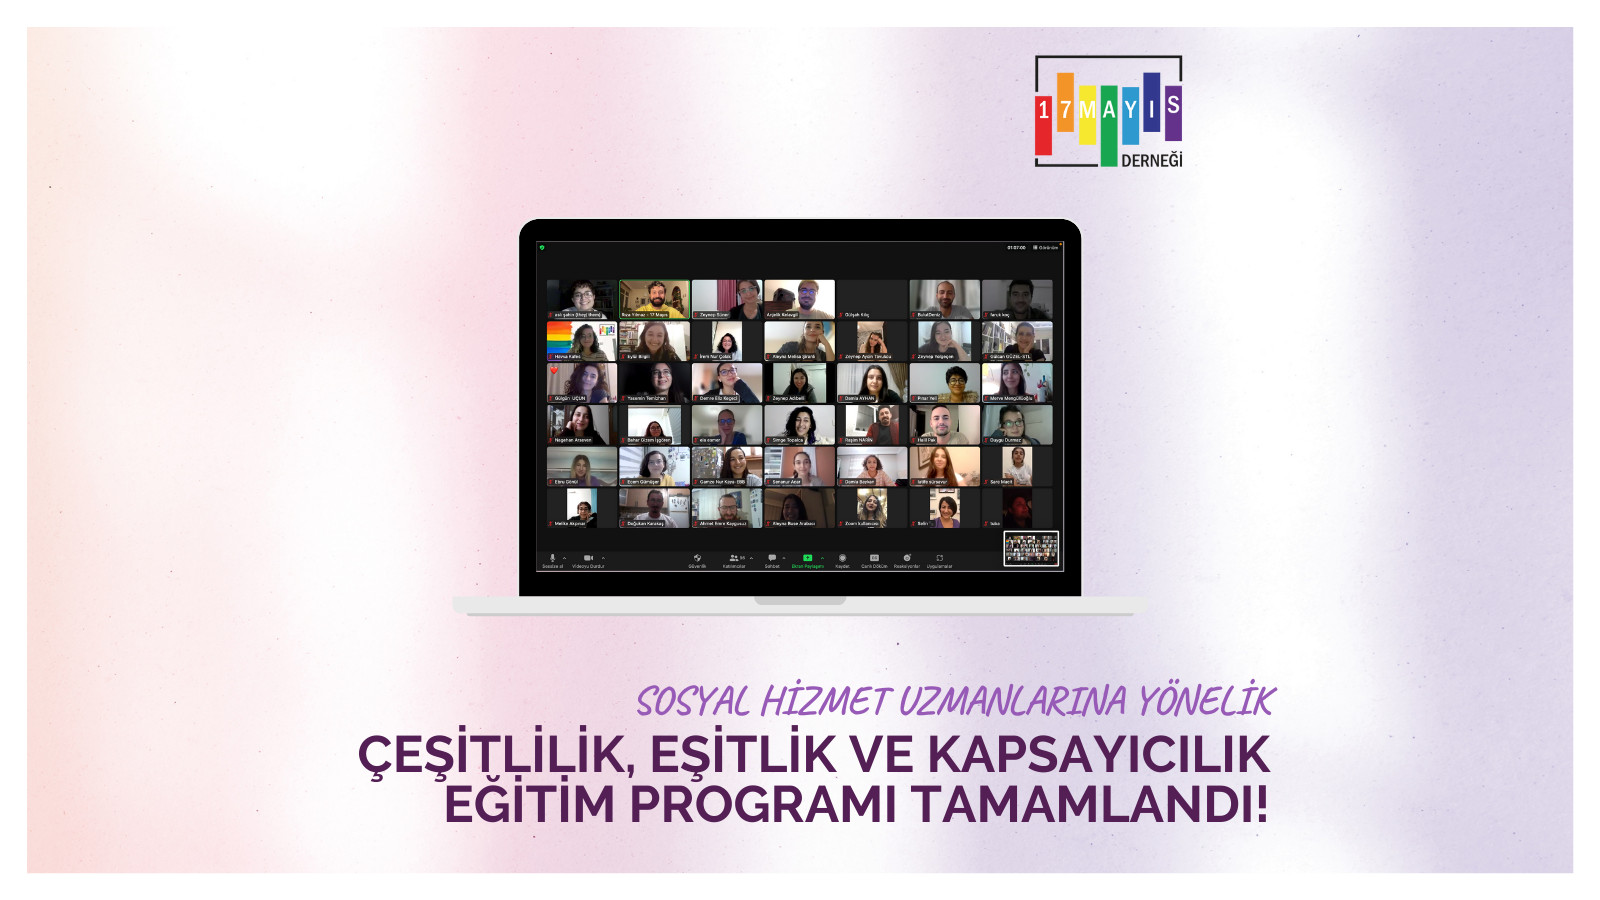 17 Mayıs’ın Çeşitlilik, Eşitlik ve Kapsayıcılık Eğitim Programı tamamlandı | Kaos GL - LGBTİ+ Haber Portalı Haber